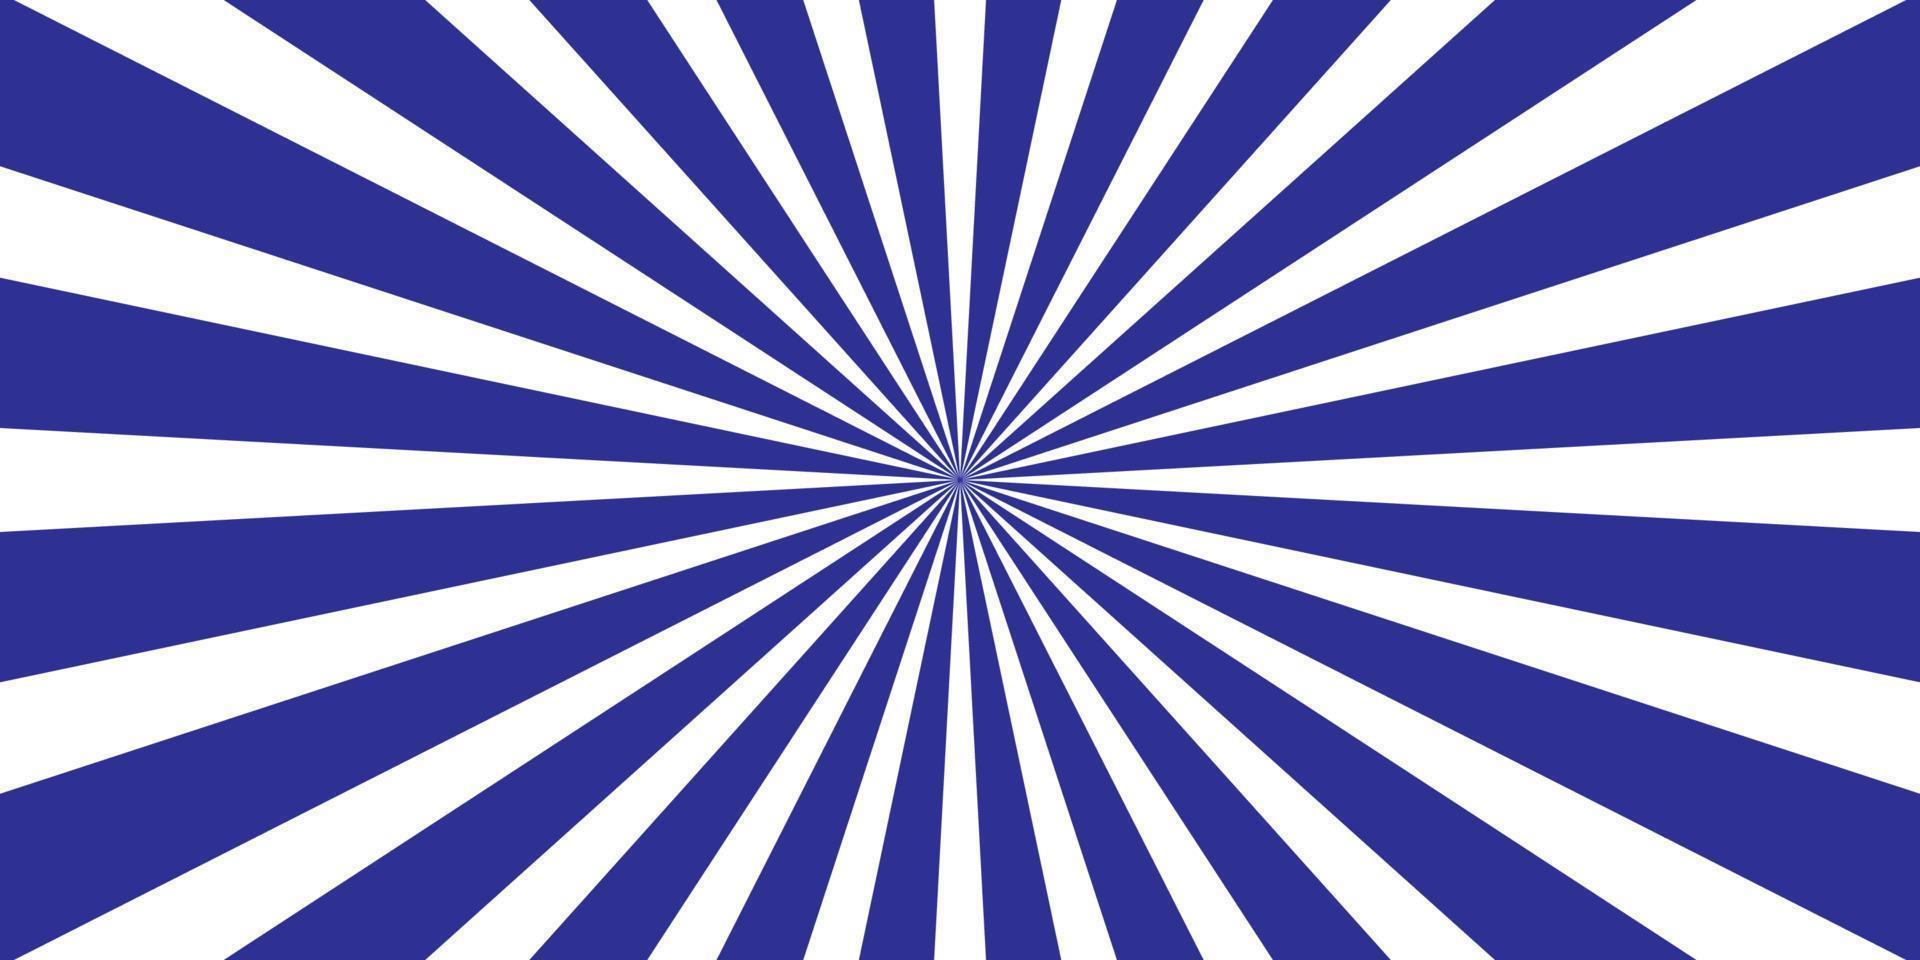 Spiralhintergrund-Vektorillustration vektor